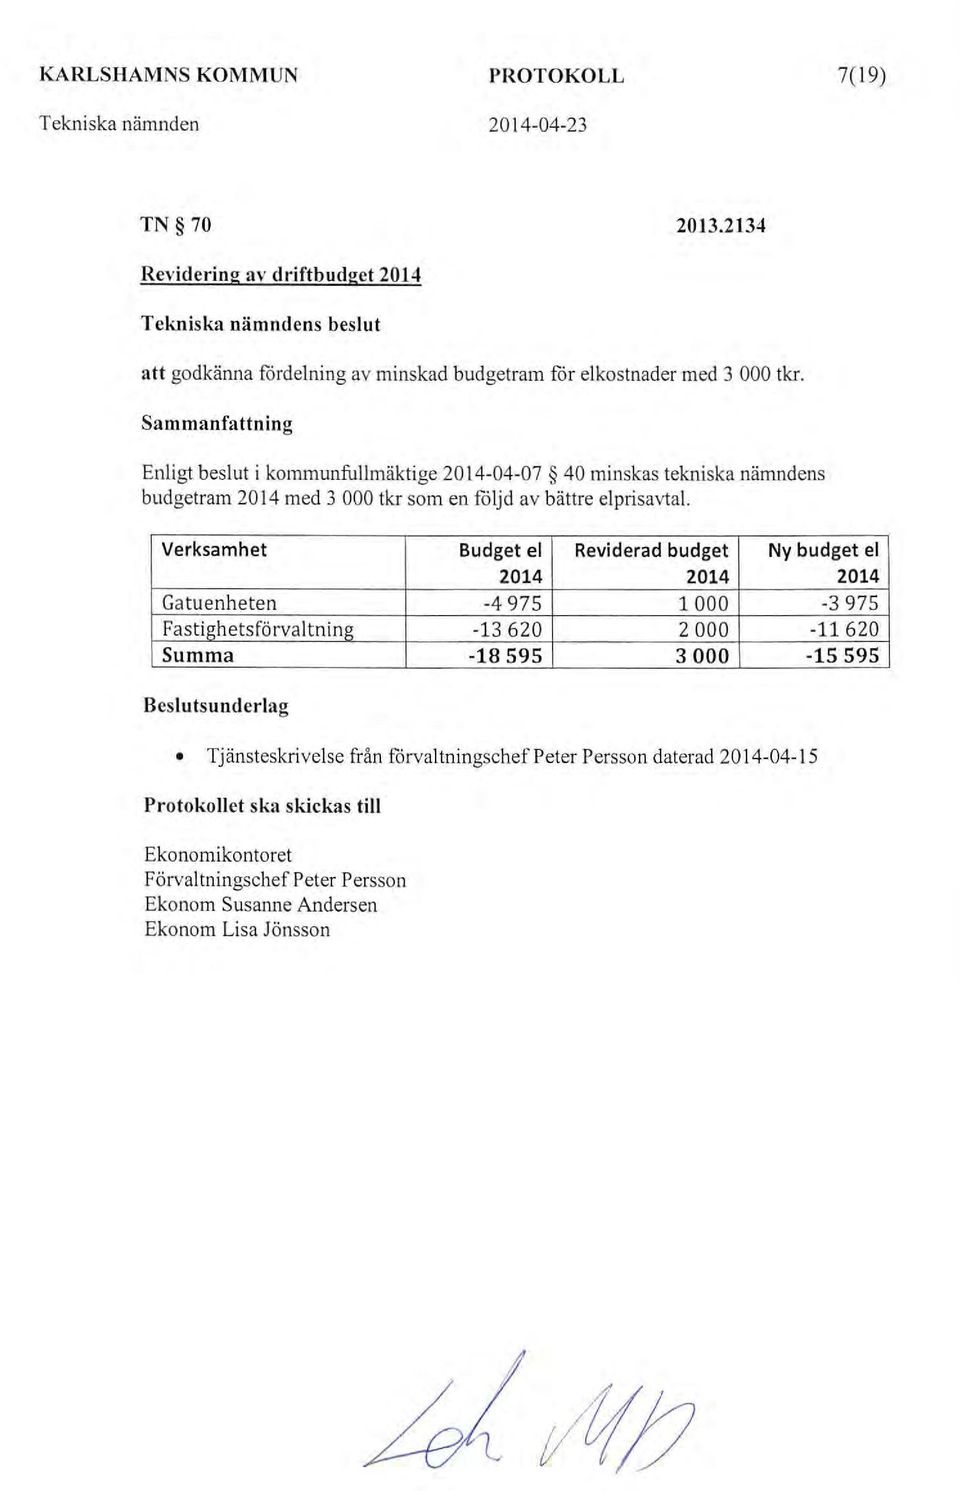 Sammanfattning Enligt beslut i kommunfullmäktige 2014-04-07 40 minskas tekniska nämndens budgetram 2014 med 3 000 tkr som en fö ljd av bättre el prisavtal Verksamhet Budget el Revid erad